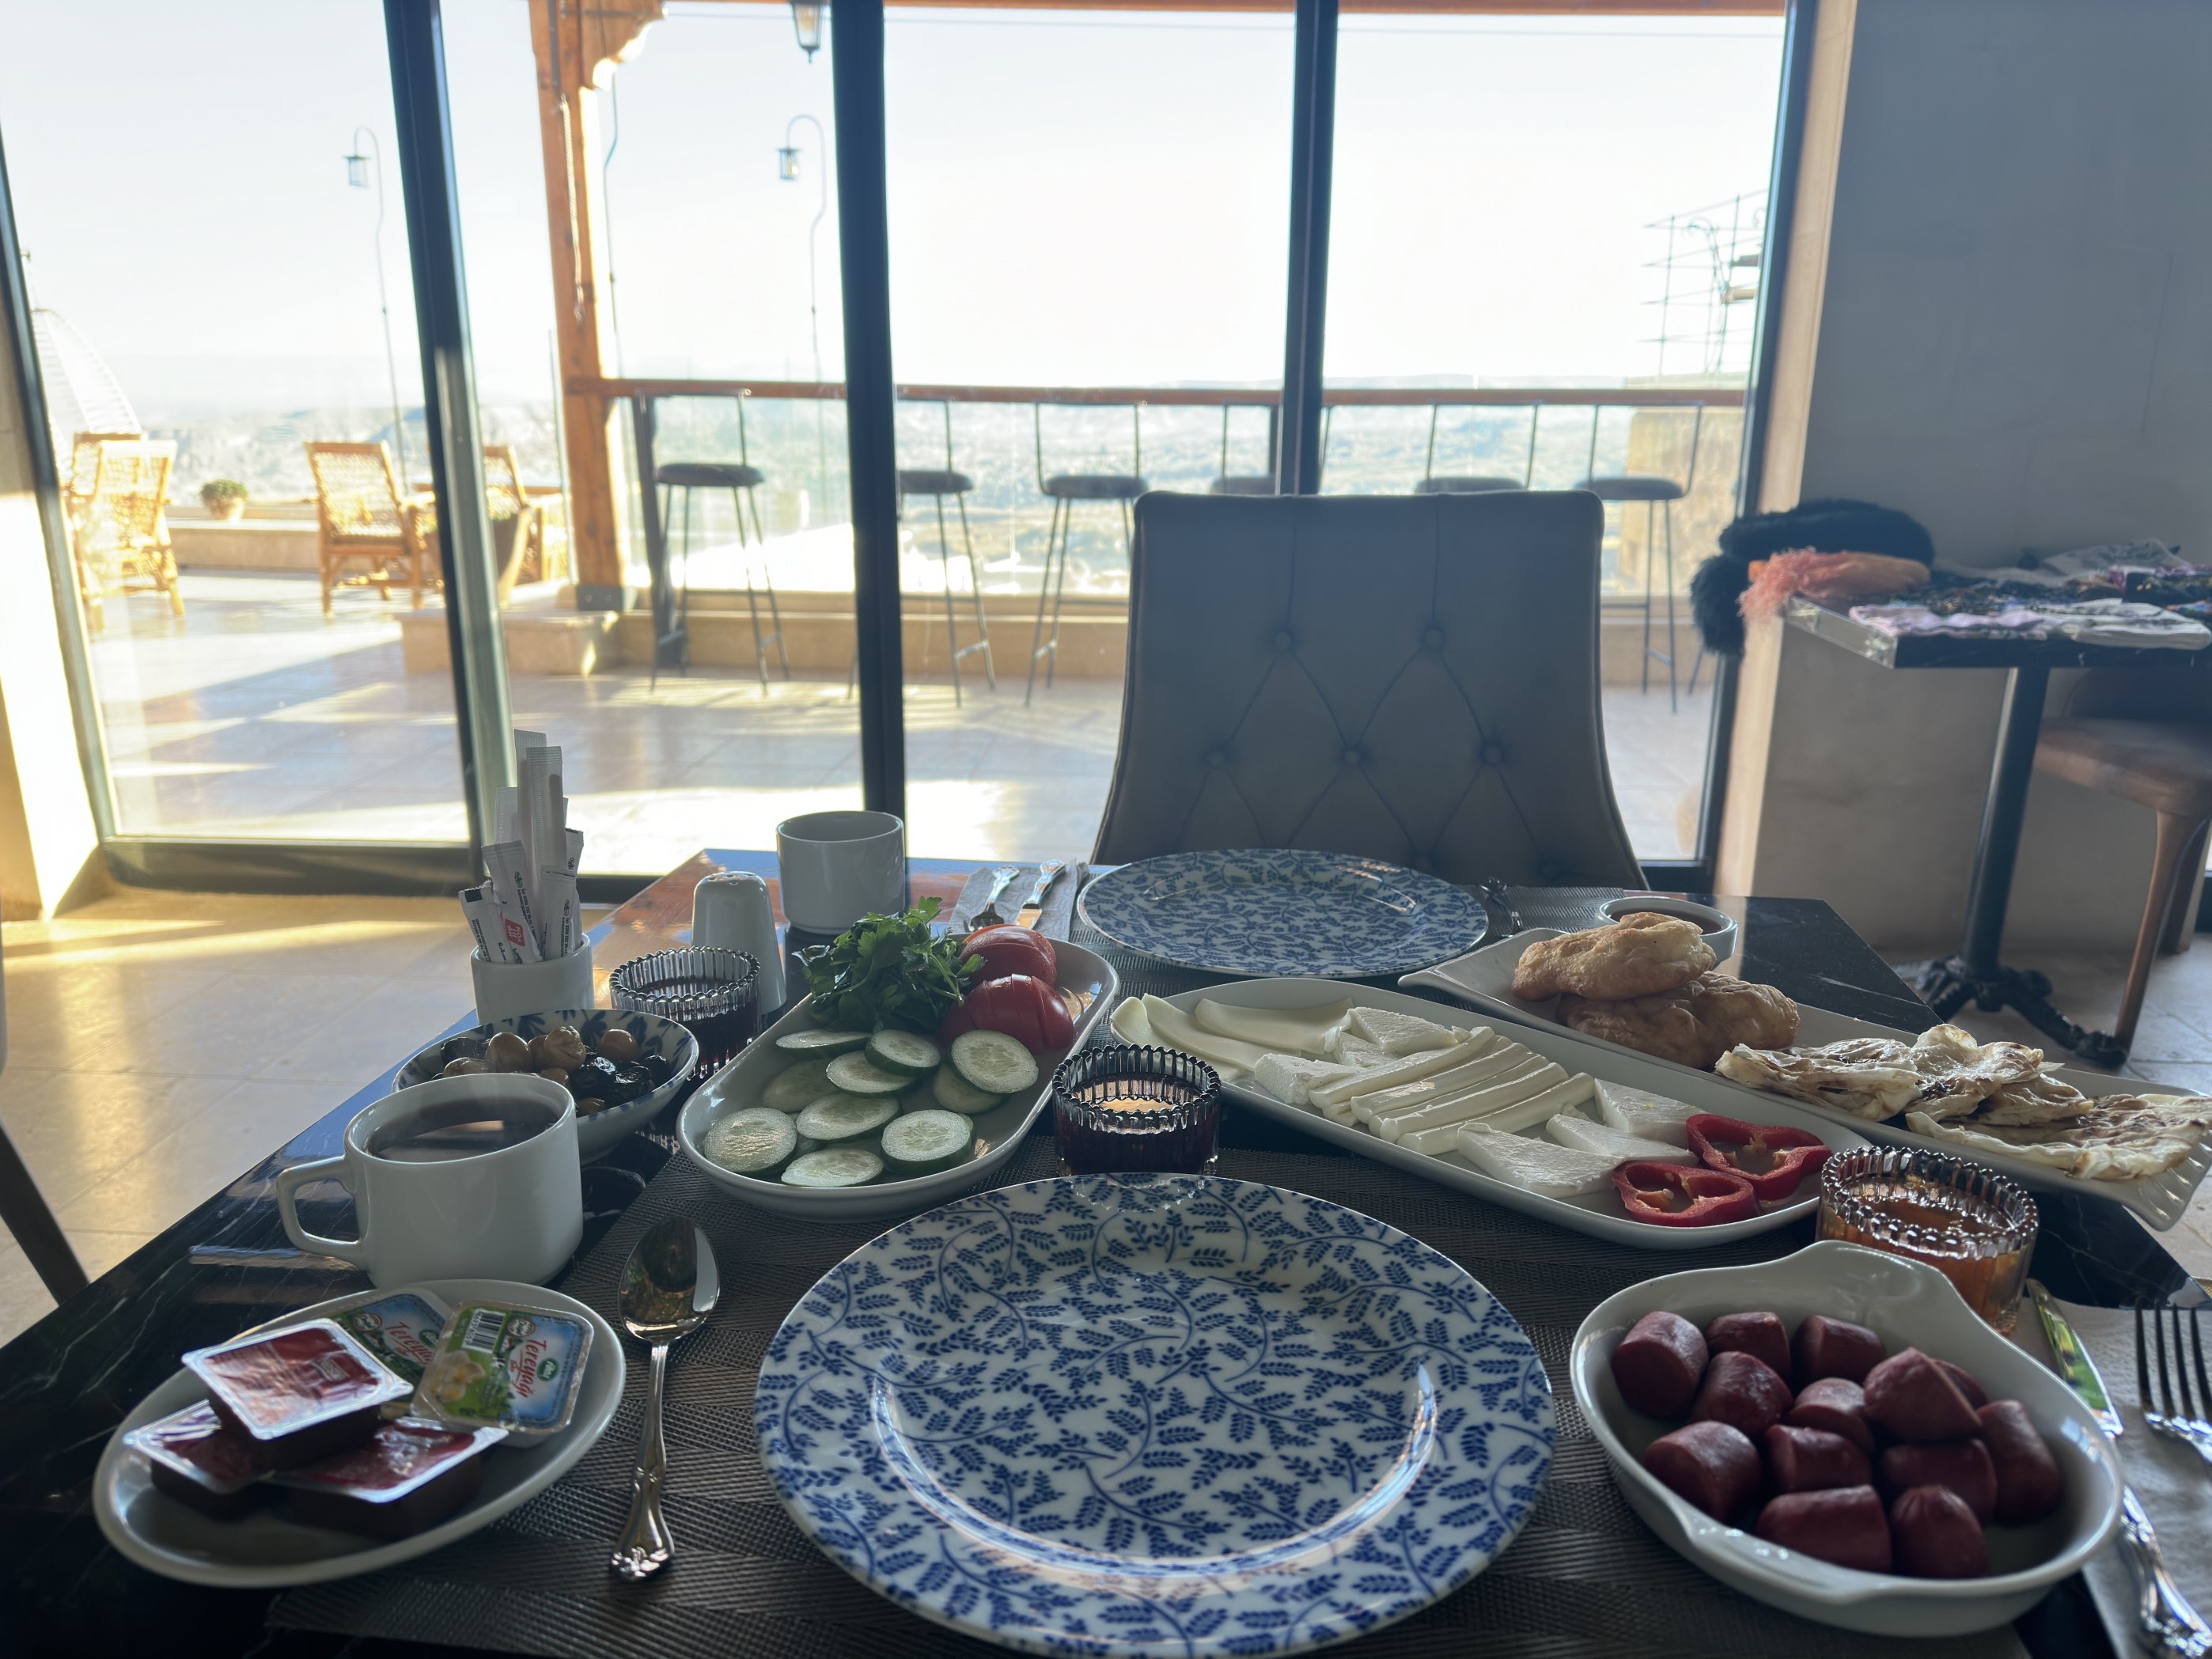 早餐是土耳其传统形式，非常的丰富。唯一缺点是冬天去房间有些冷